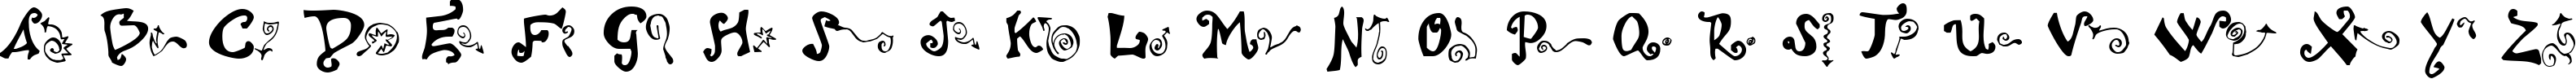 Пример написания английского алфавита шрифтом Polywog